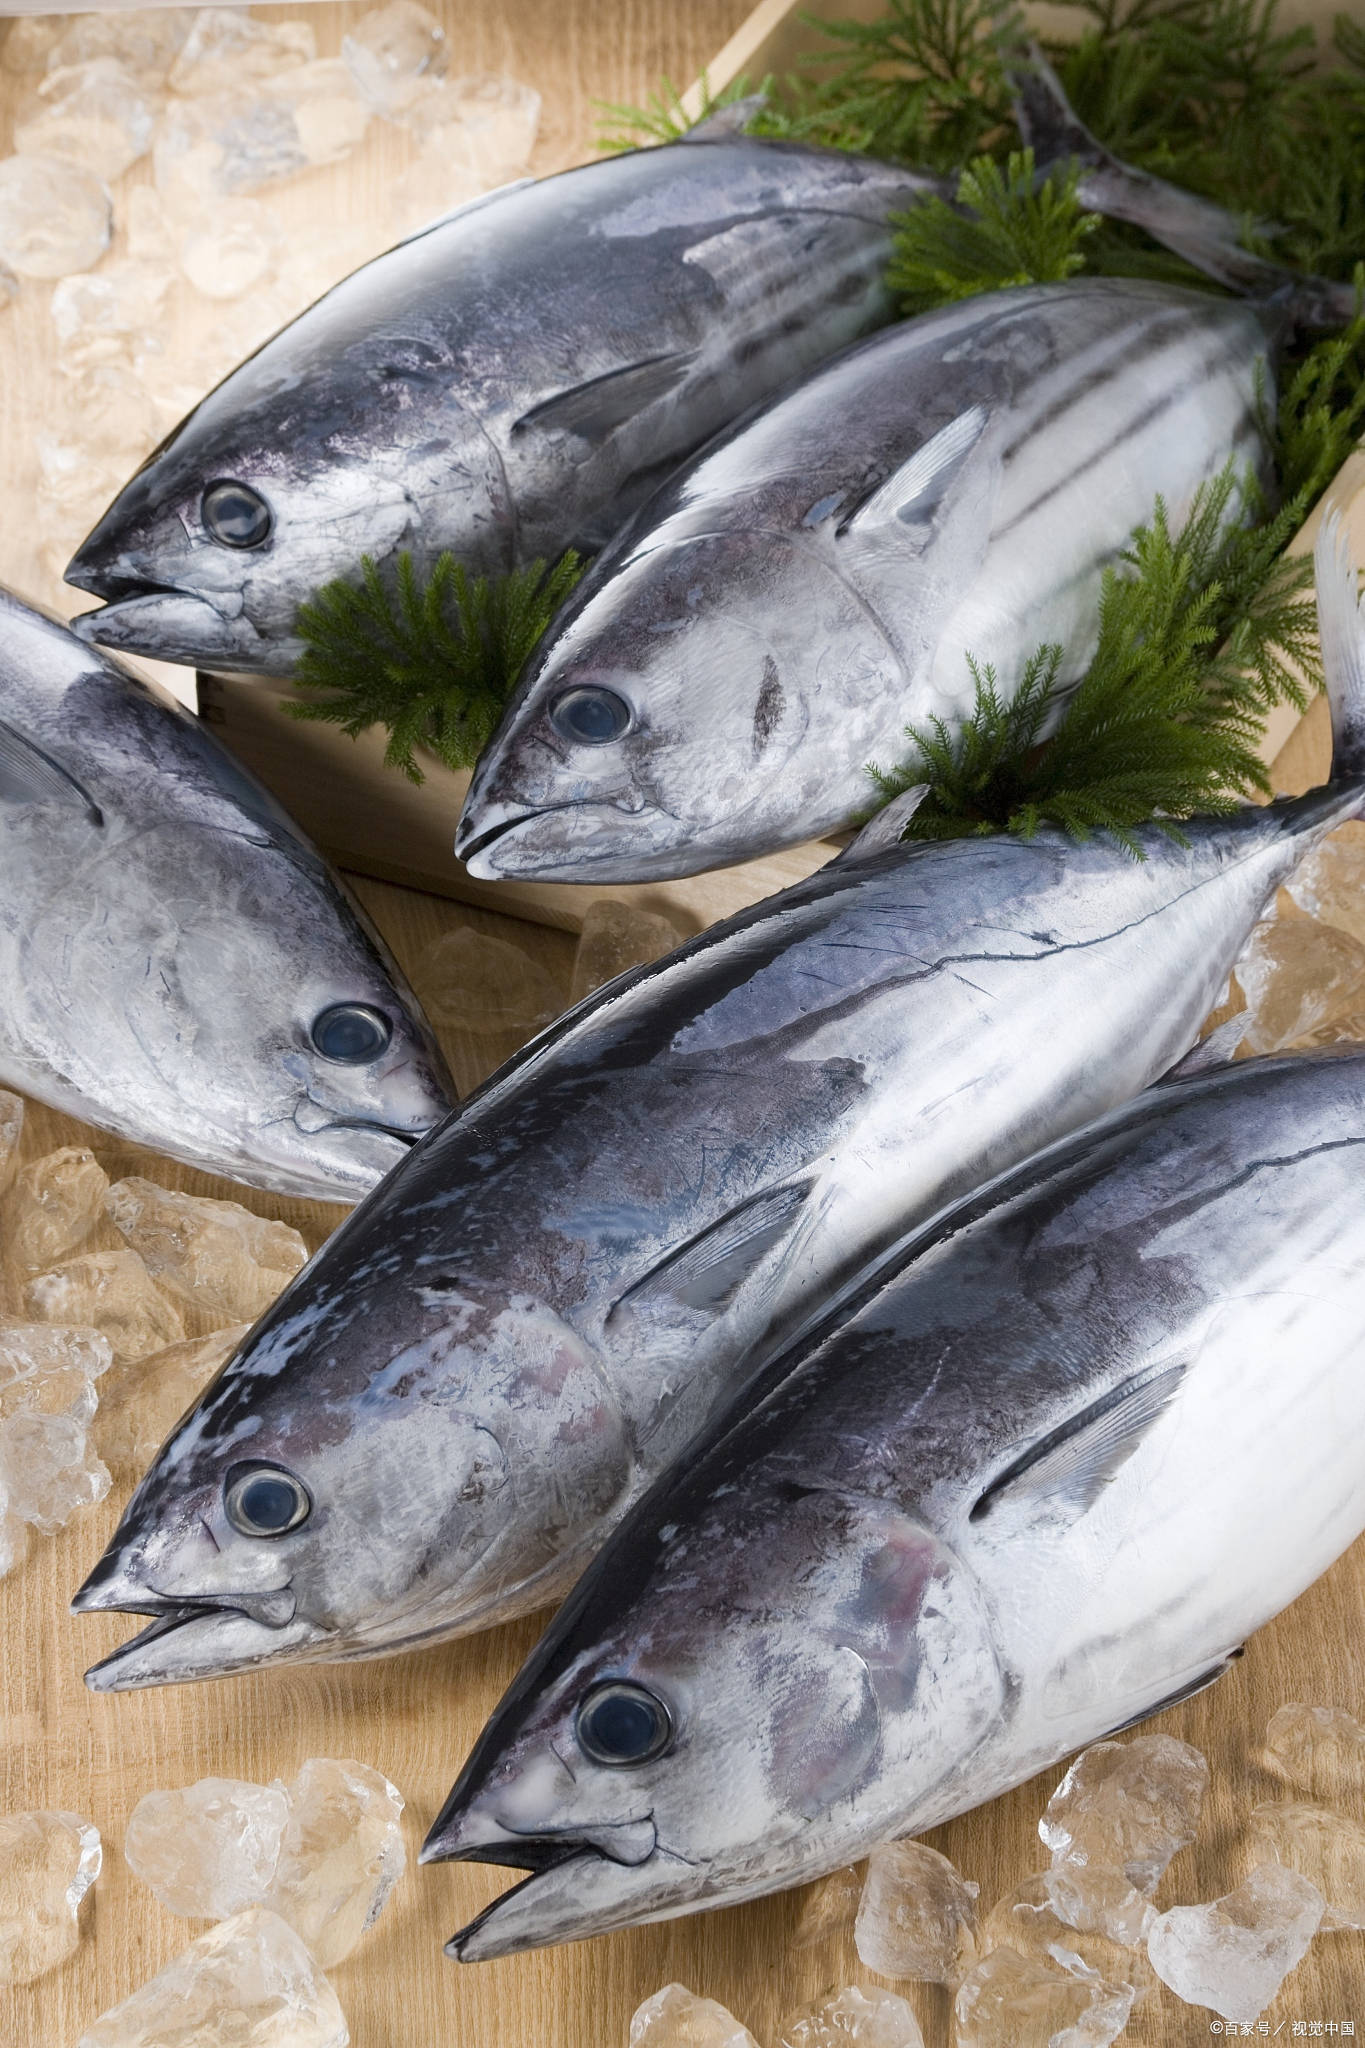 季节蓝鳍金枪鱼在西太平洋地区,全年都可捕捞到北太平洋蓝鳍金枪鱼